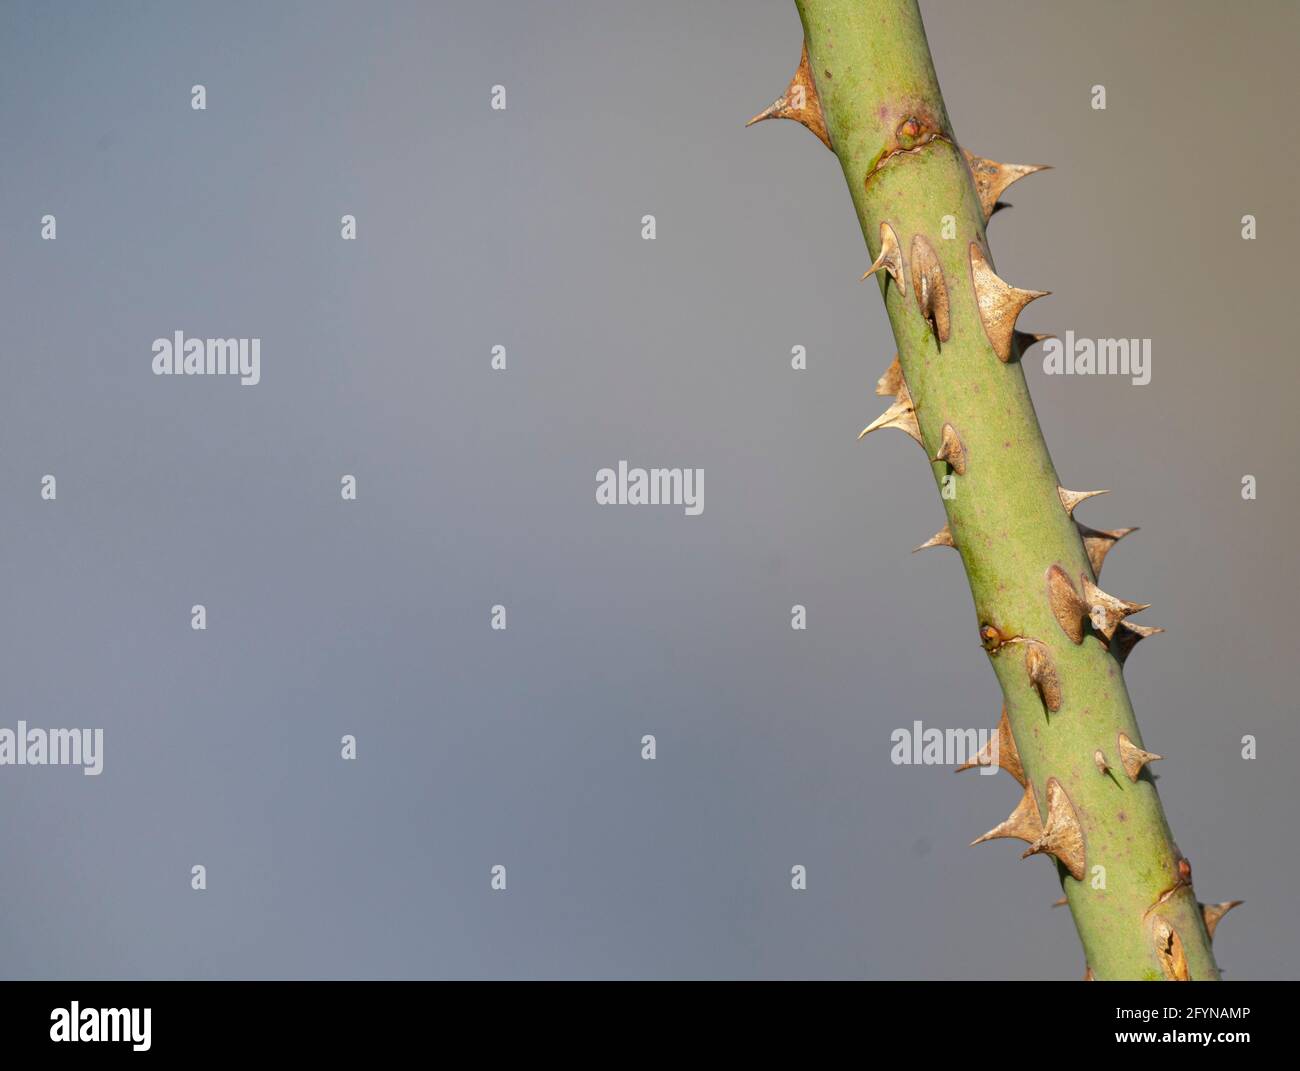 Détail isolé d'une tige de plante avec des épines vives et un arrière-plan flou Banque D'Images